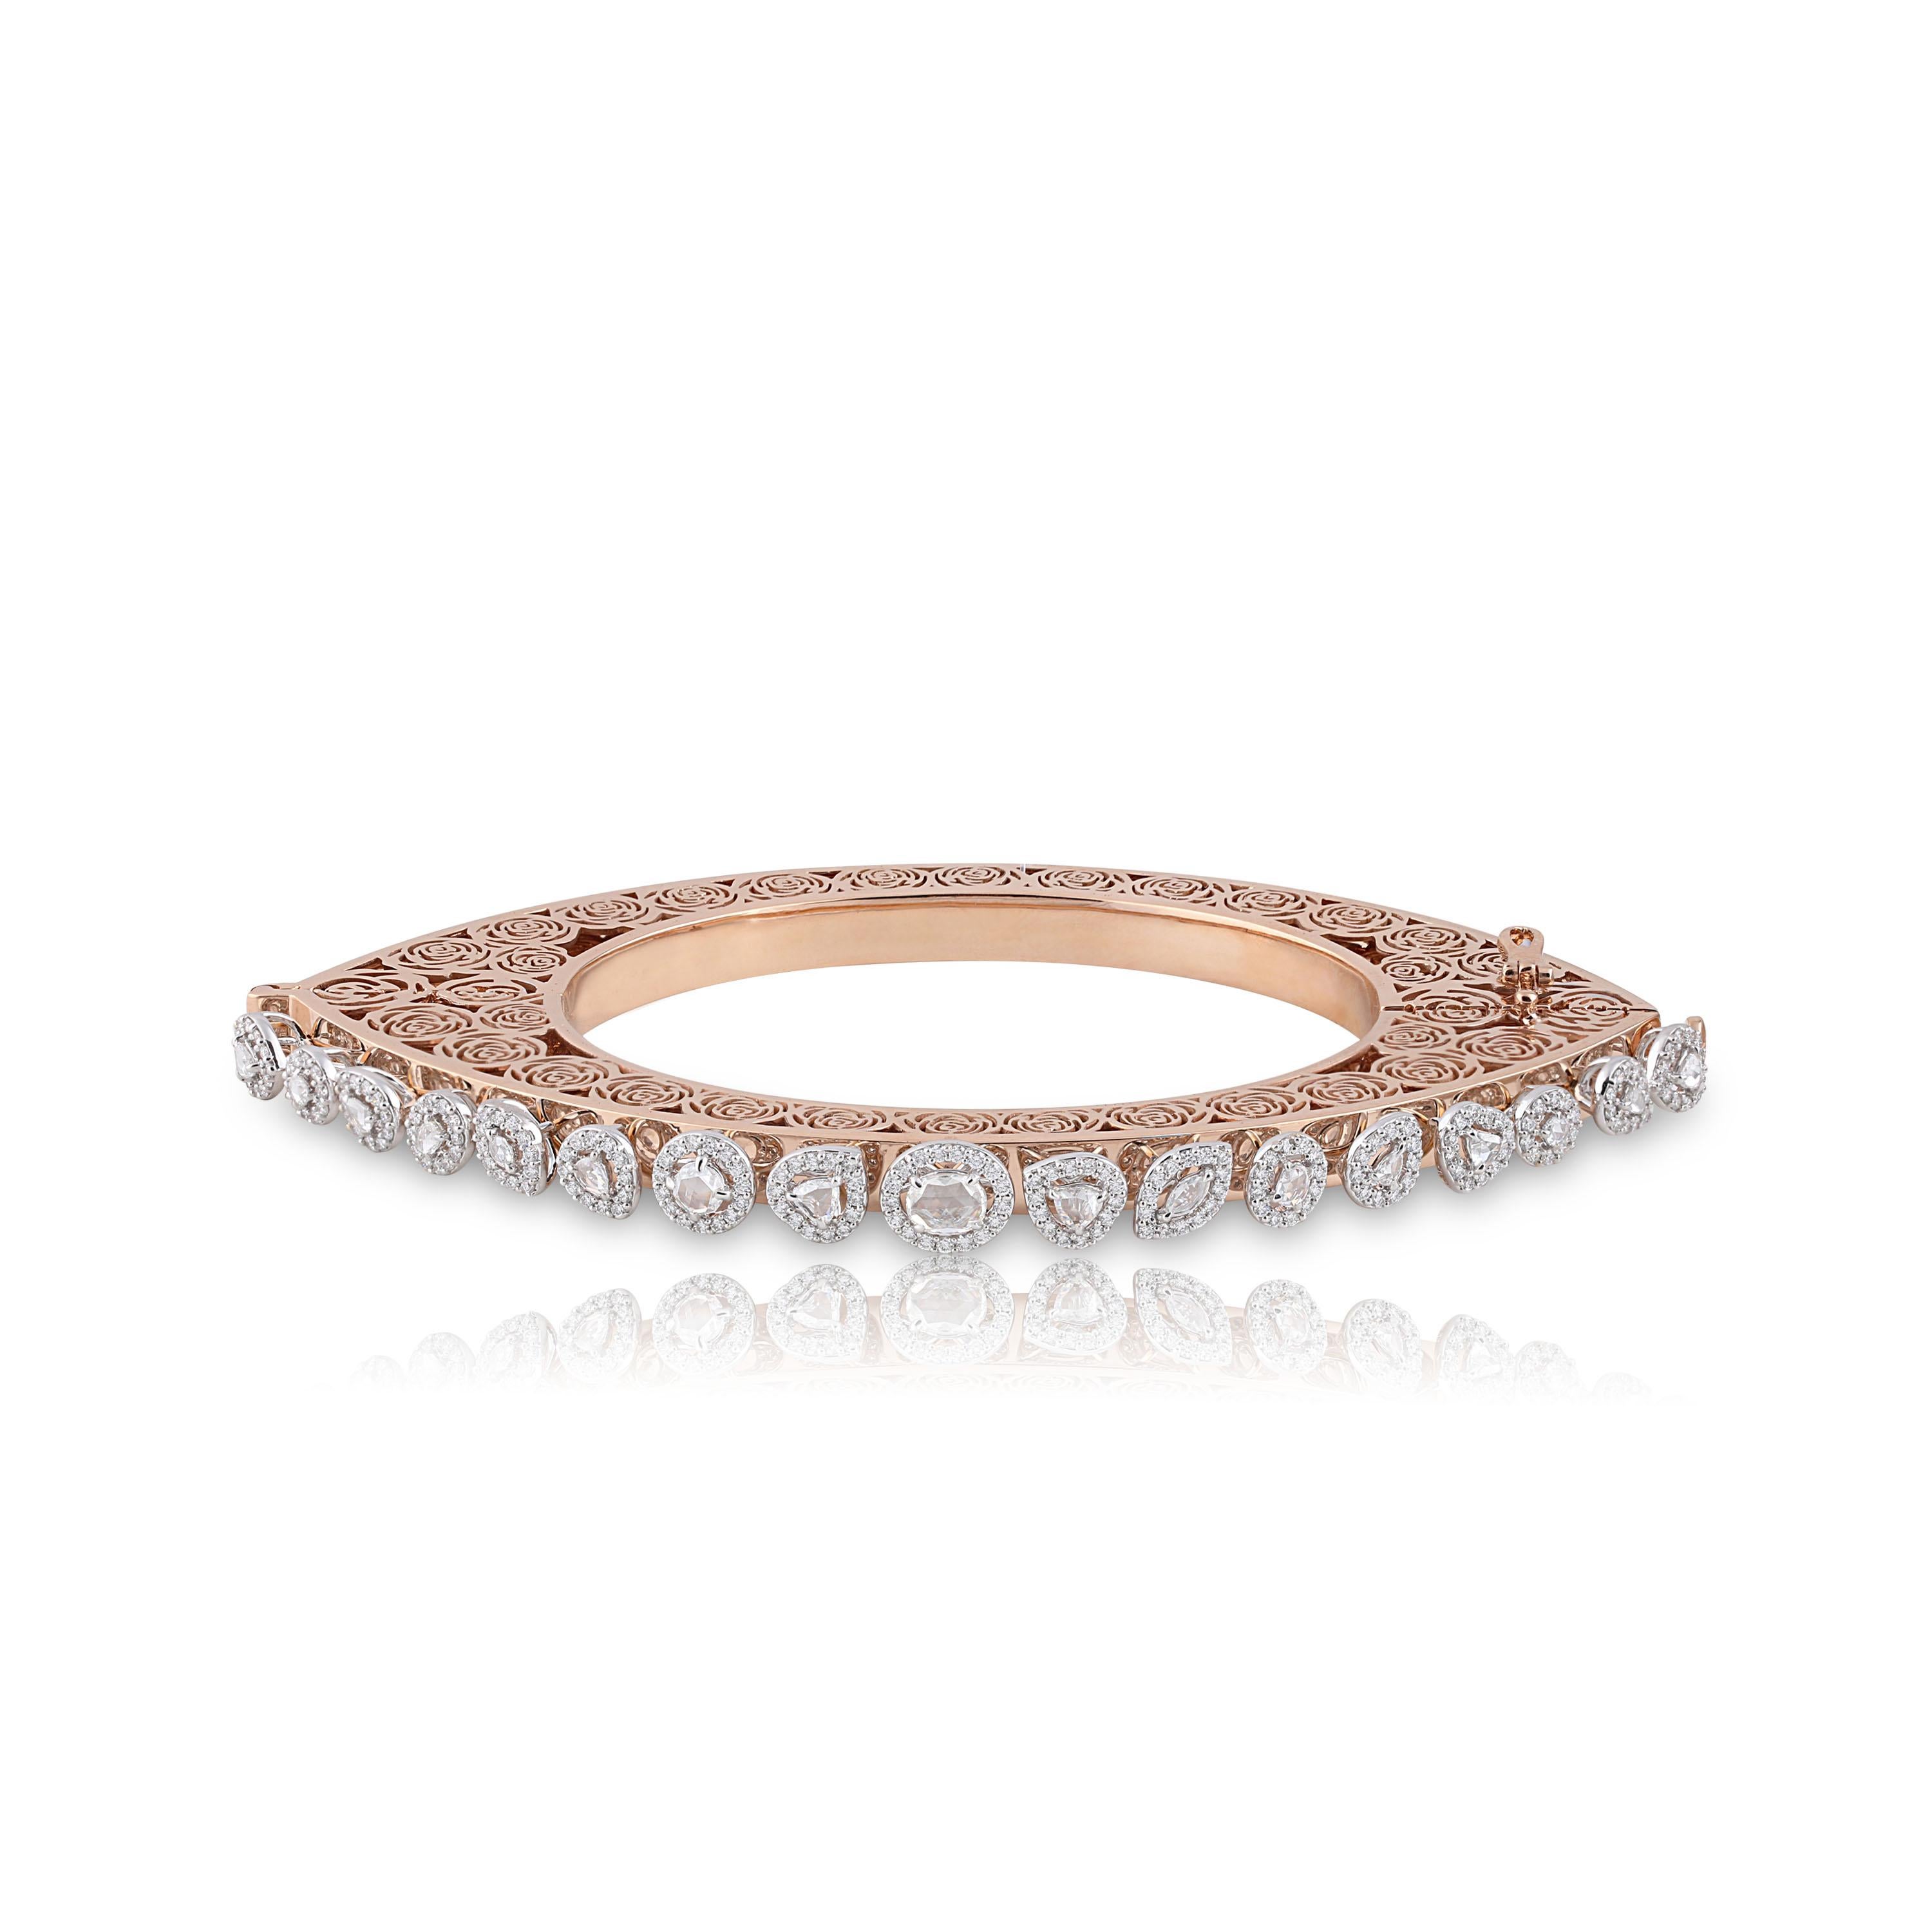 Studio Rêves Diamonds and Filigree Bracelet in 18 Karat Gold 2